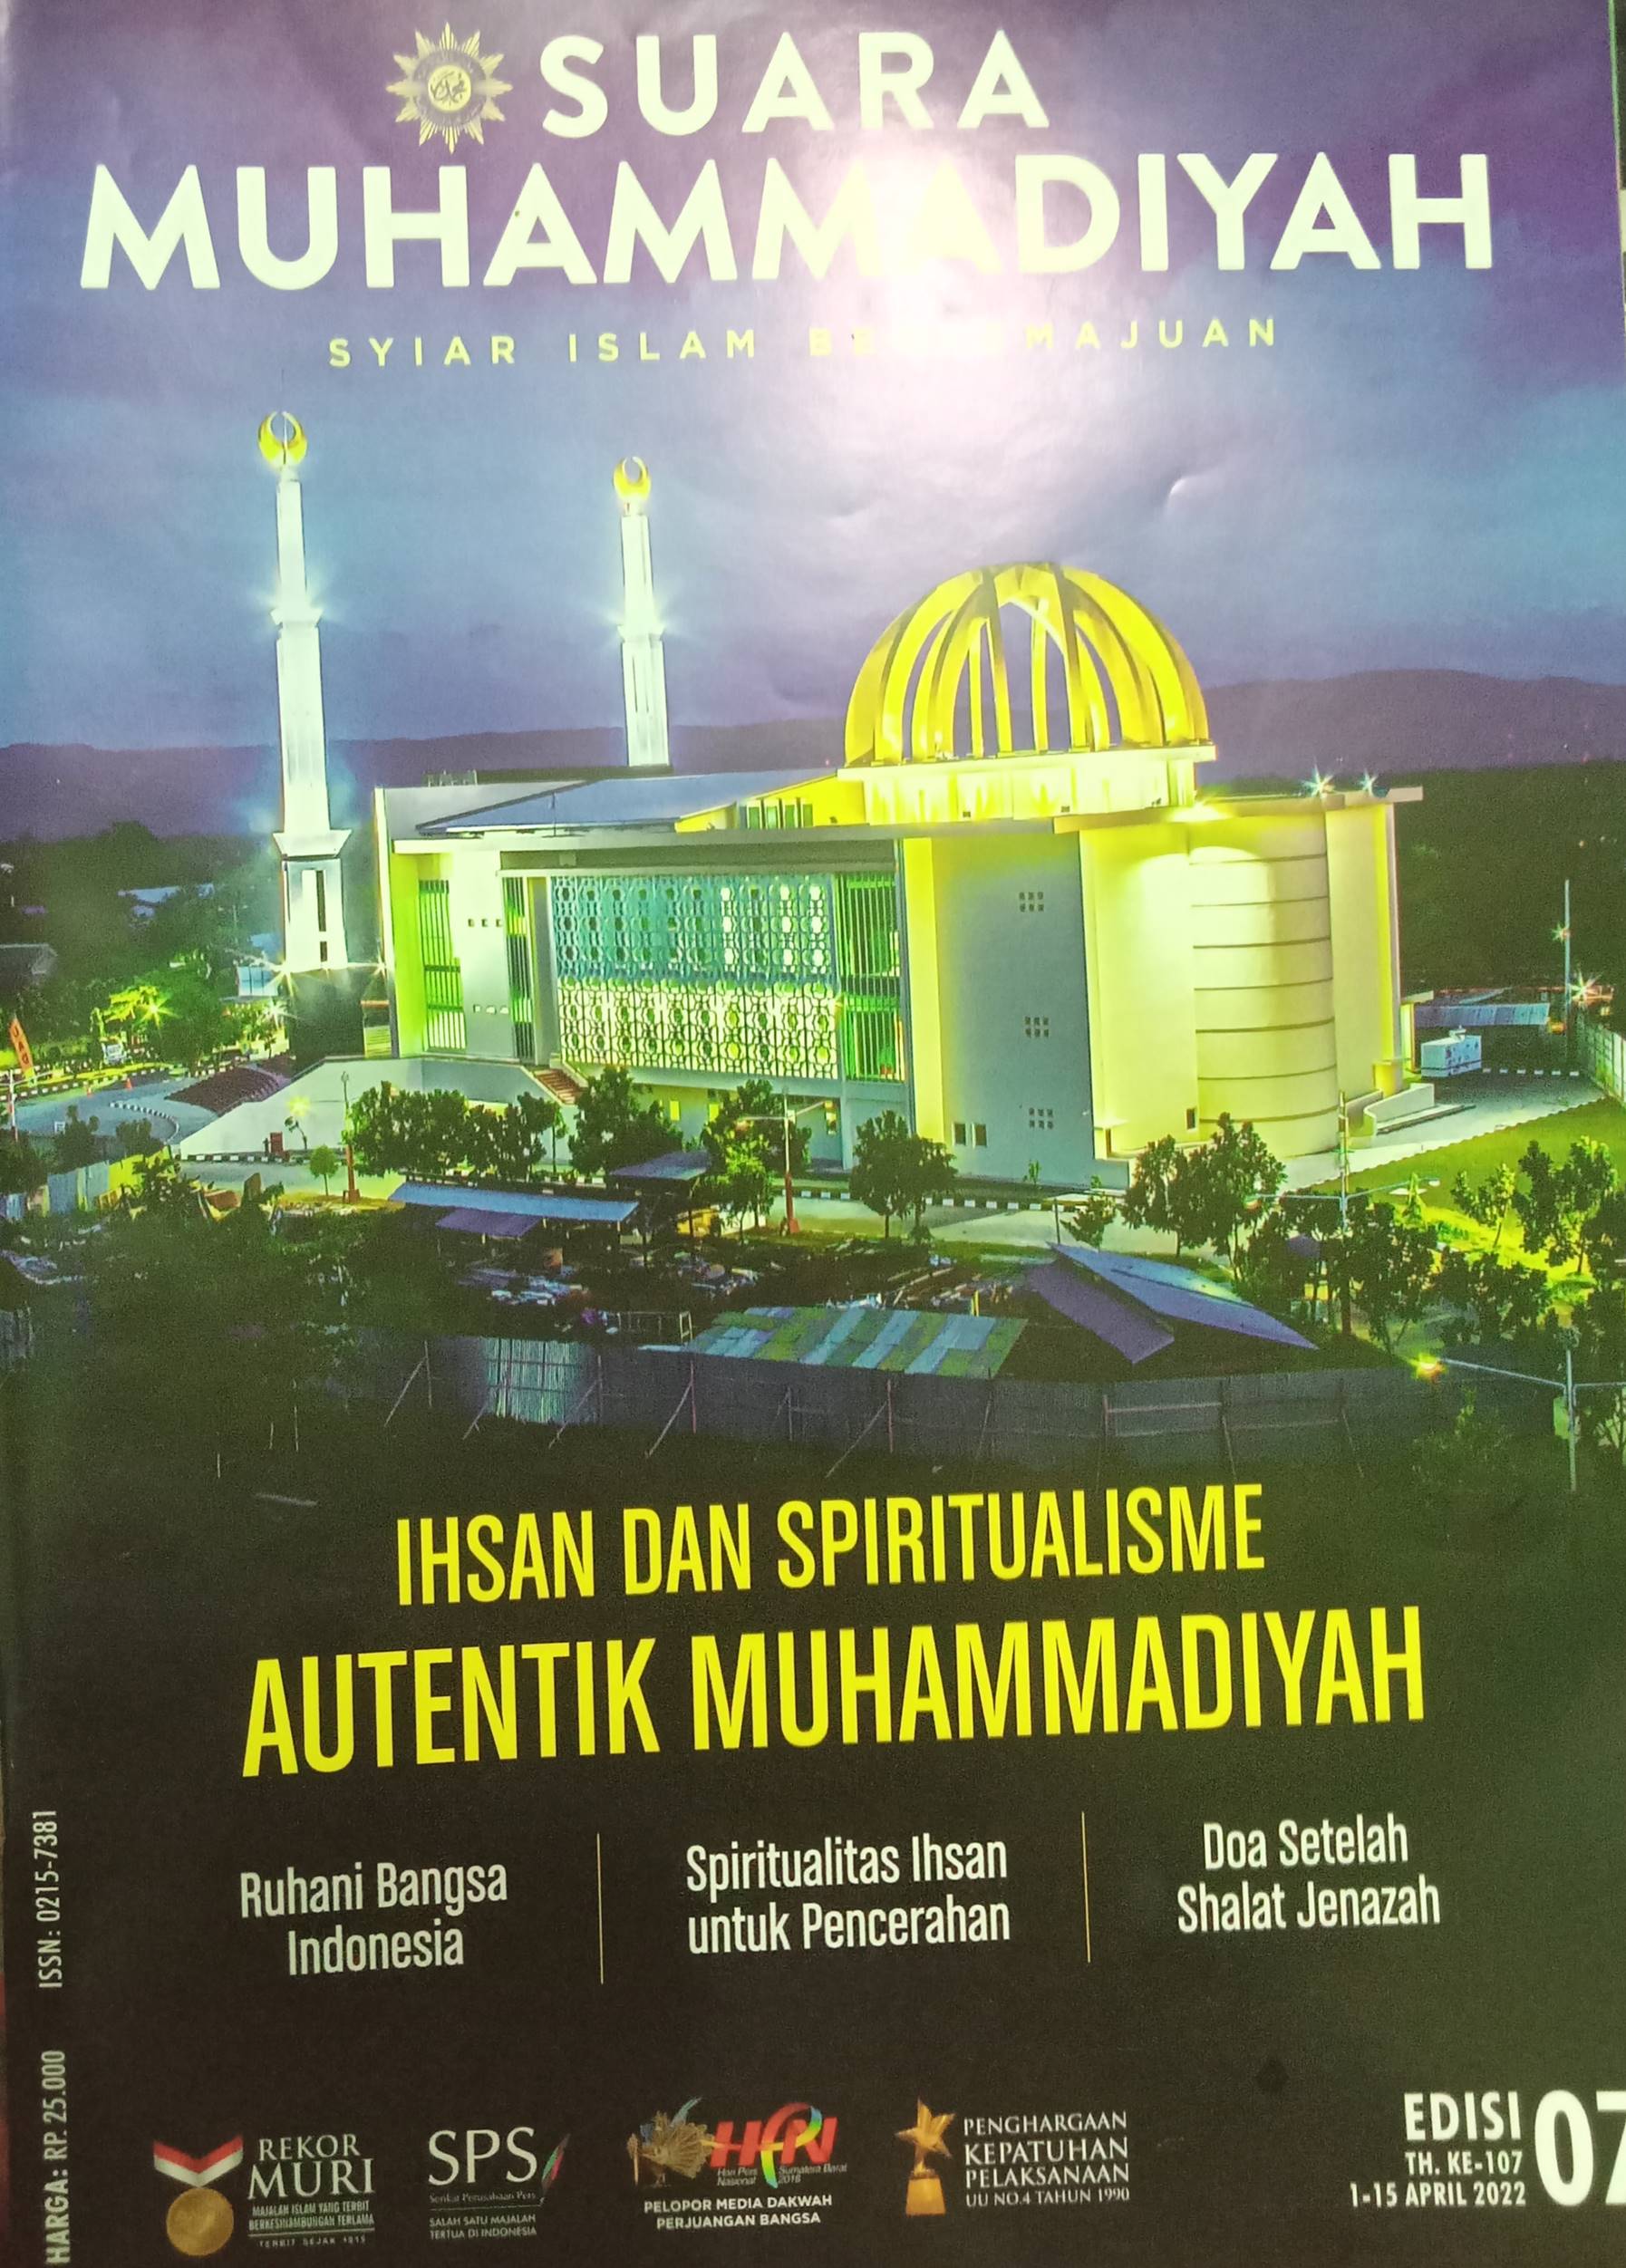 SUARA MUHAMMADIYAH: Syiar Islam Berkemajuan= Ihsan dan Spiritualisme Autentik Muhammadiyah